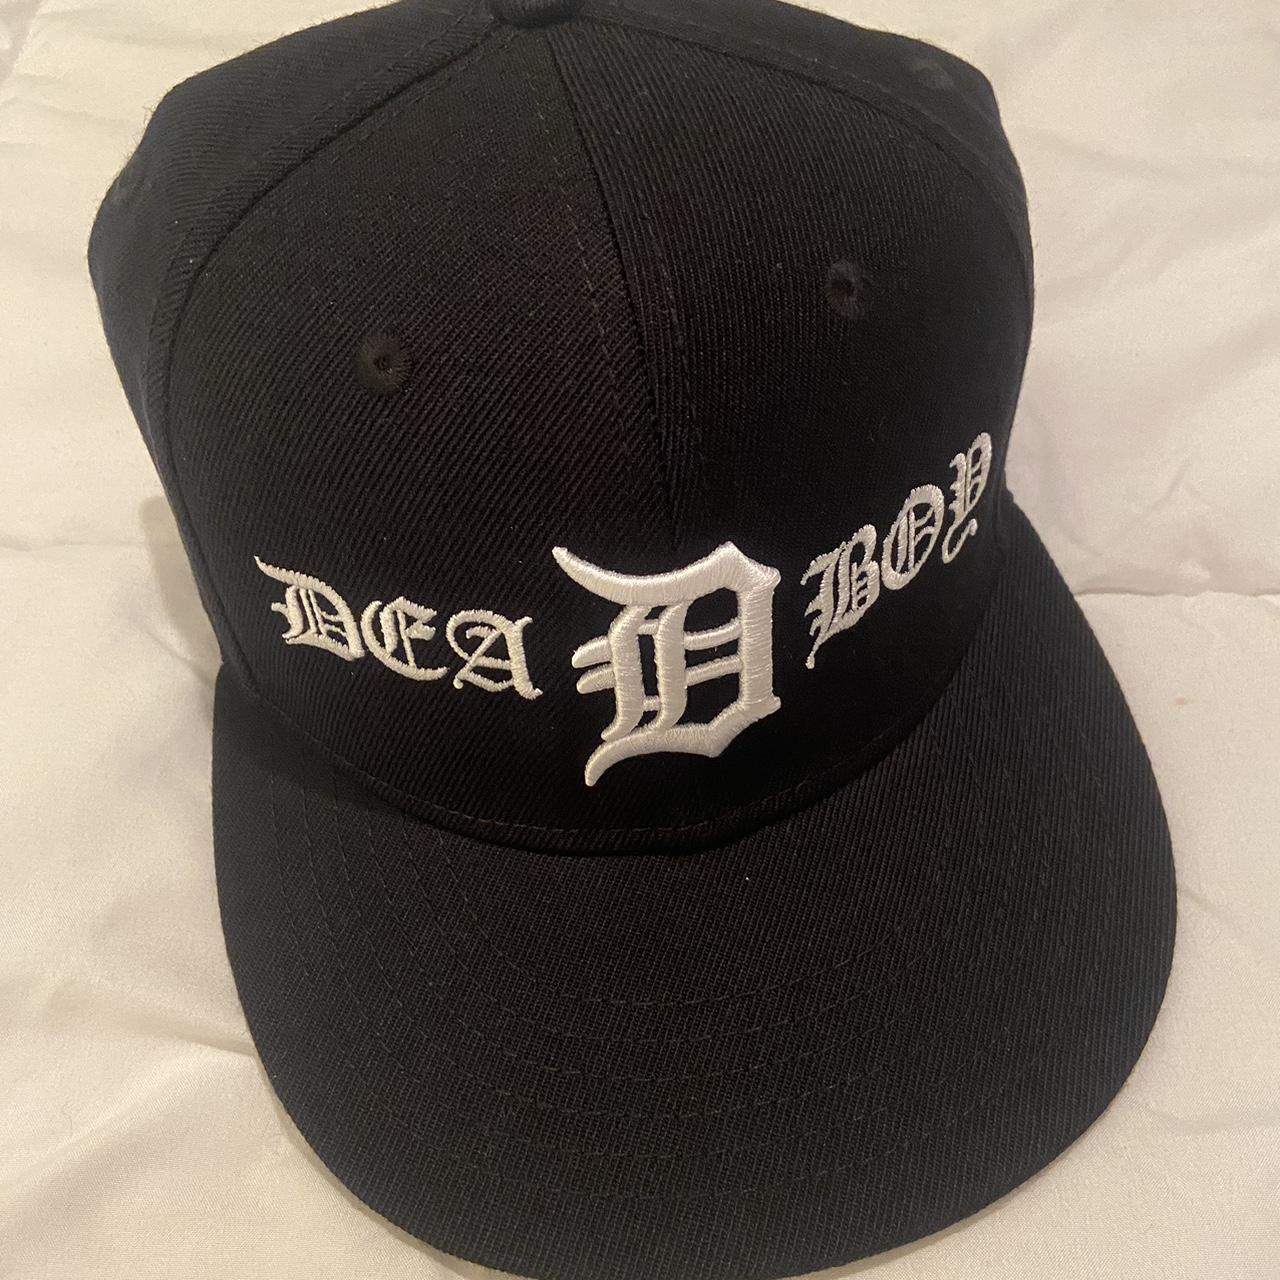 Teamsesh DeadEra DetroitDeadBoy Fitted Hat Brand New... - Depop